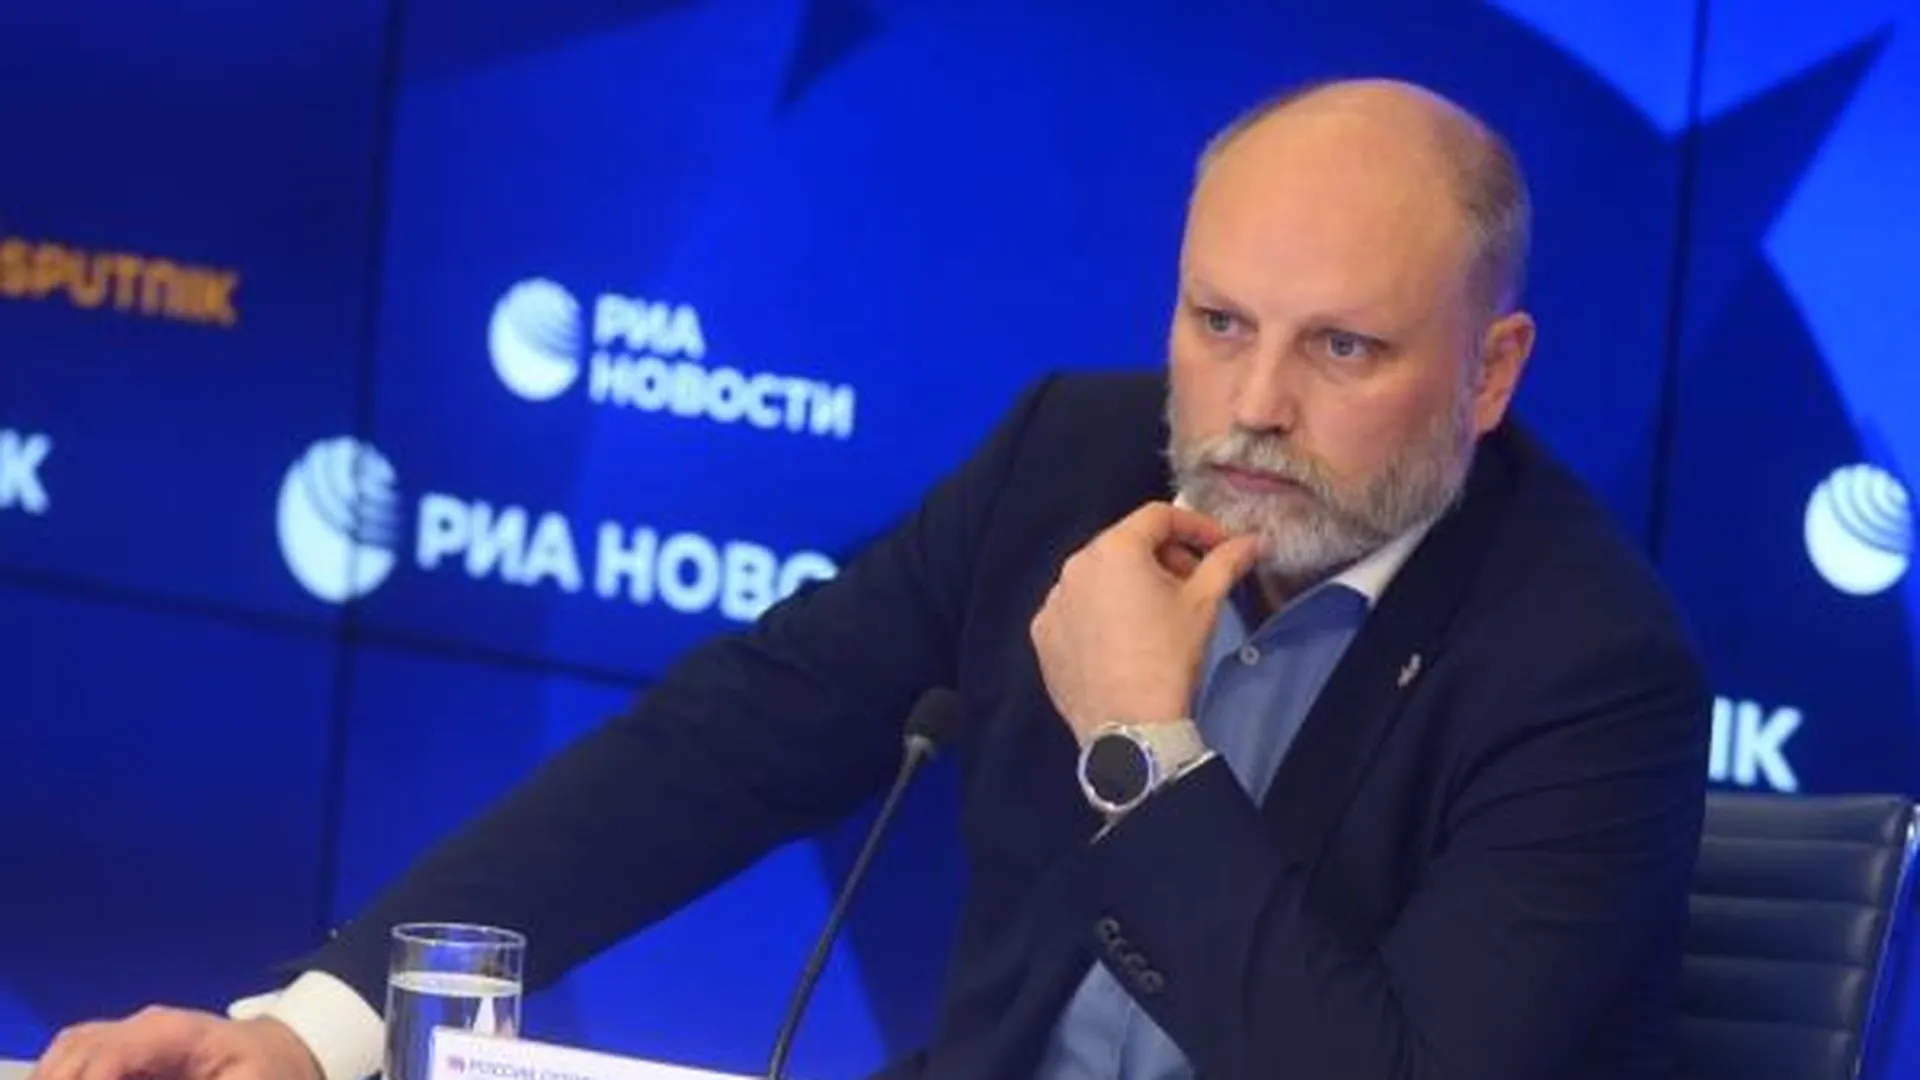 Эксперт Рогов объяснил причины отсутствия реакции ВСУ на попытку мятежа в России